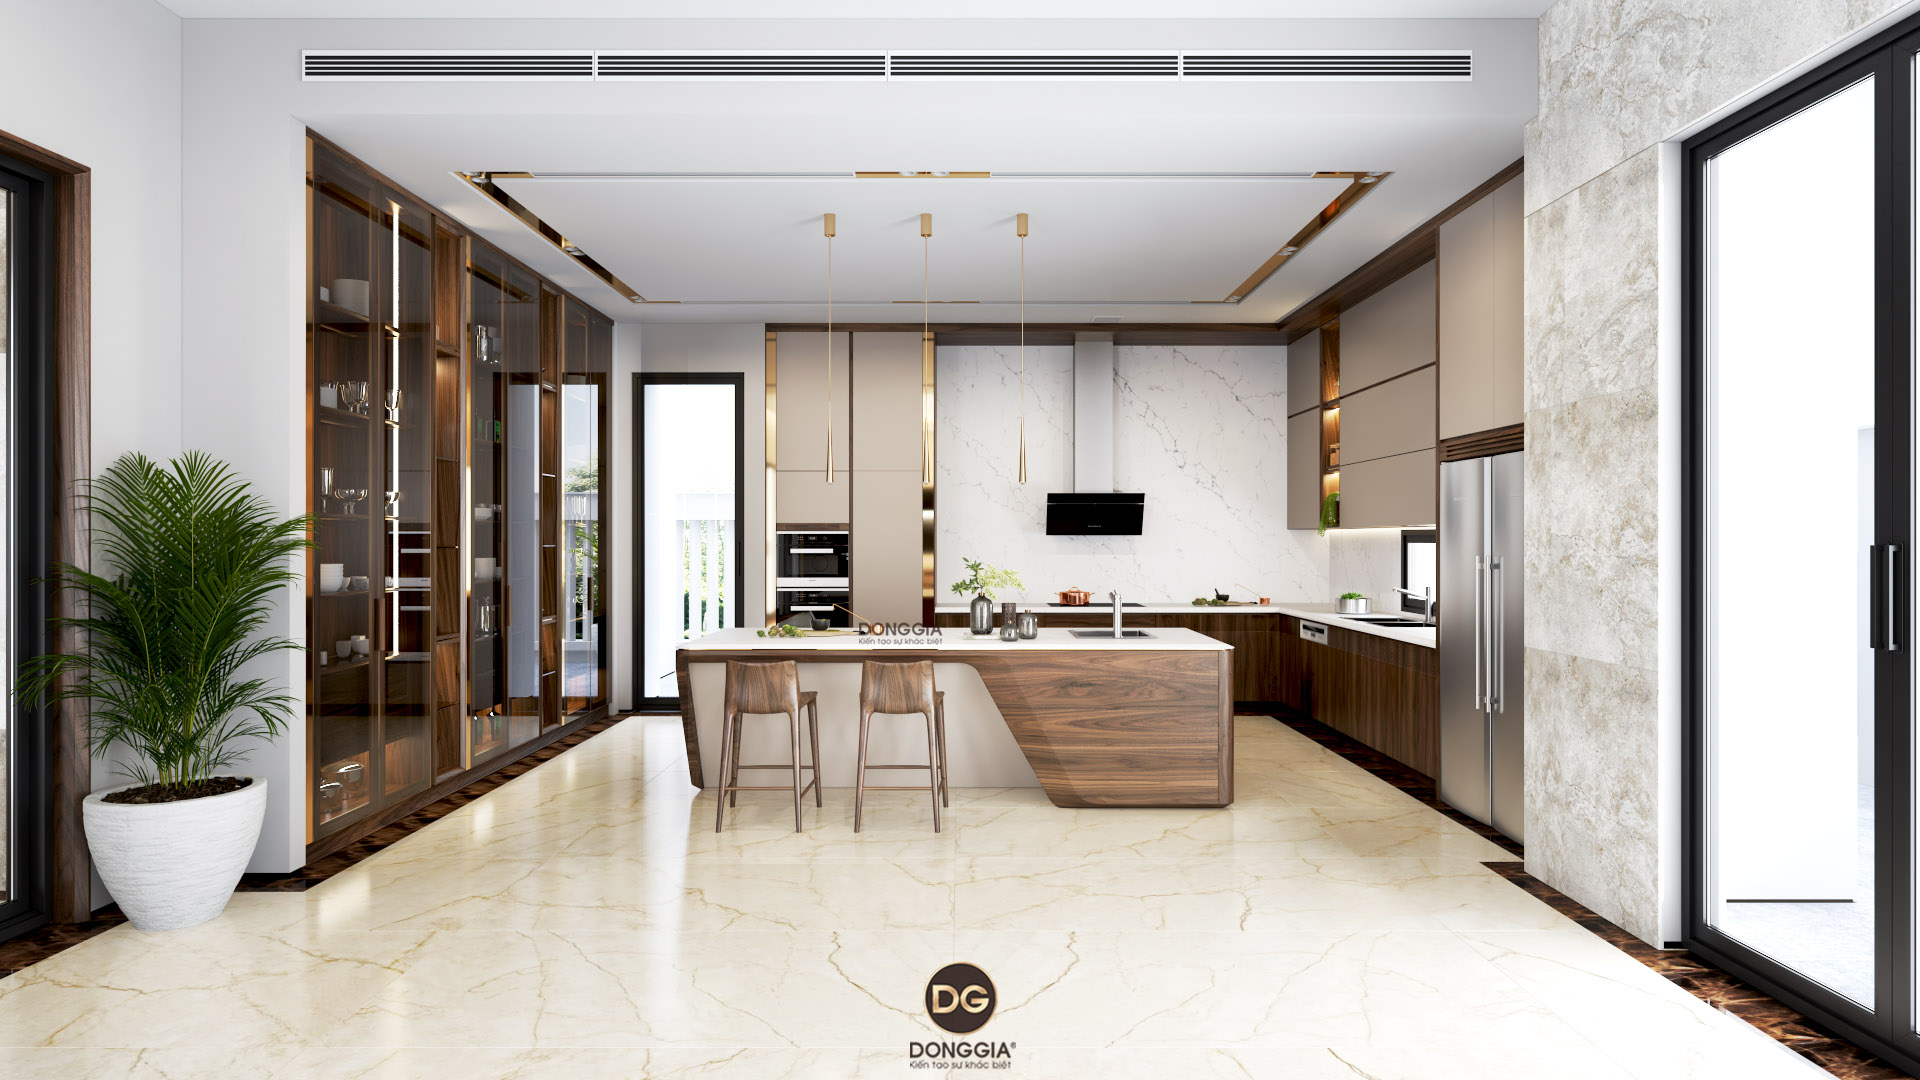 25 Mẫu thiết kế nội thất phòng bếp đẹp, xu hướng 2021